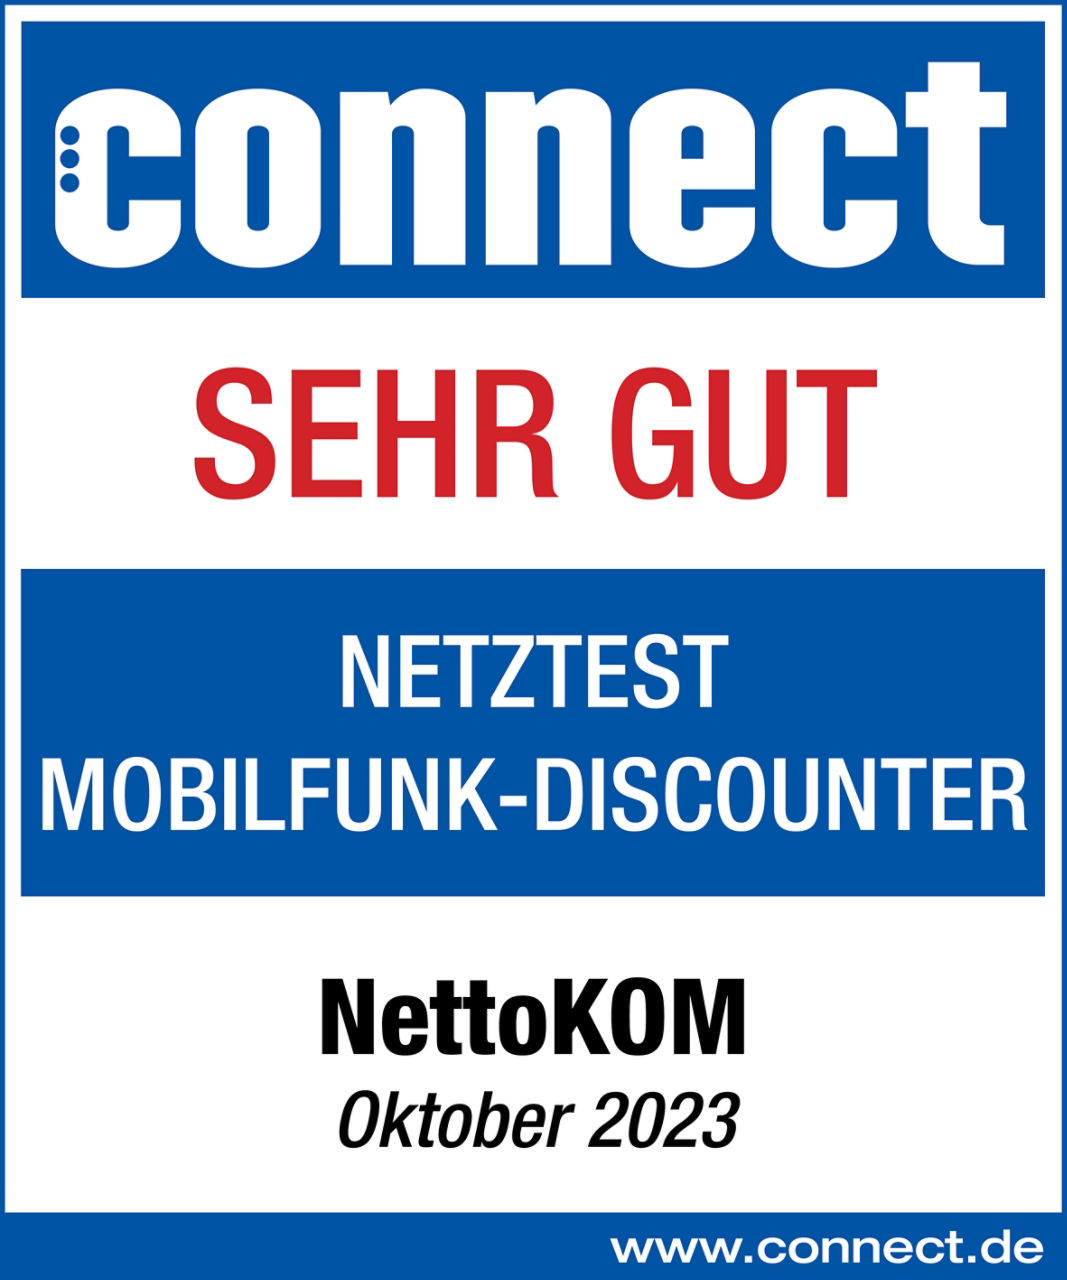 Connect bewertet 2023 die Netzqualität von Nettokom unter allen Mobilfunk Discountern mit der Note Sehr gut 